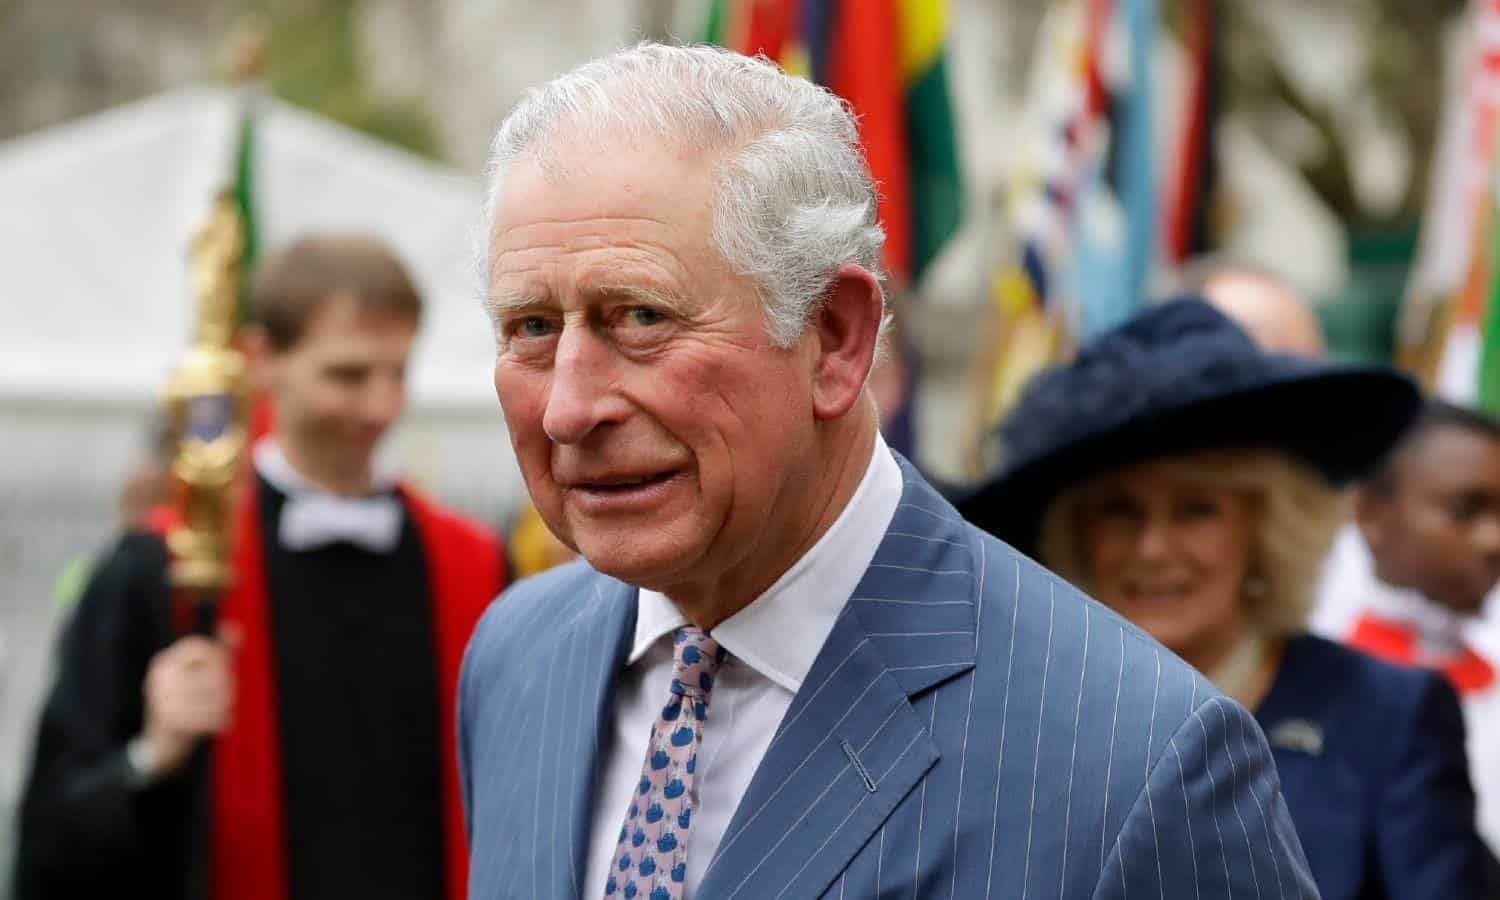 Puntos clave en la vida de Carlos, nuevo rey de Gran Bretaña